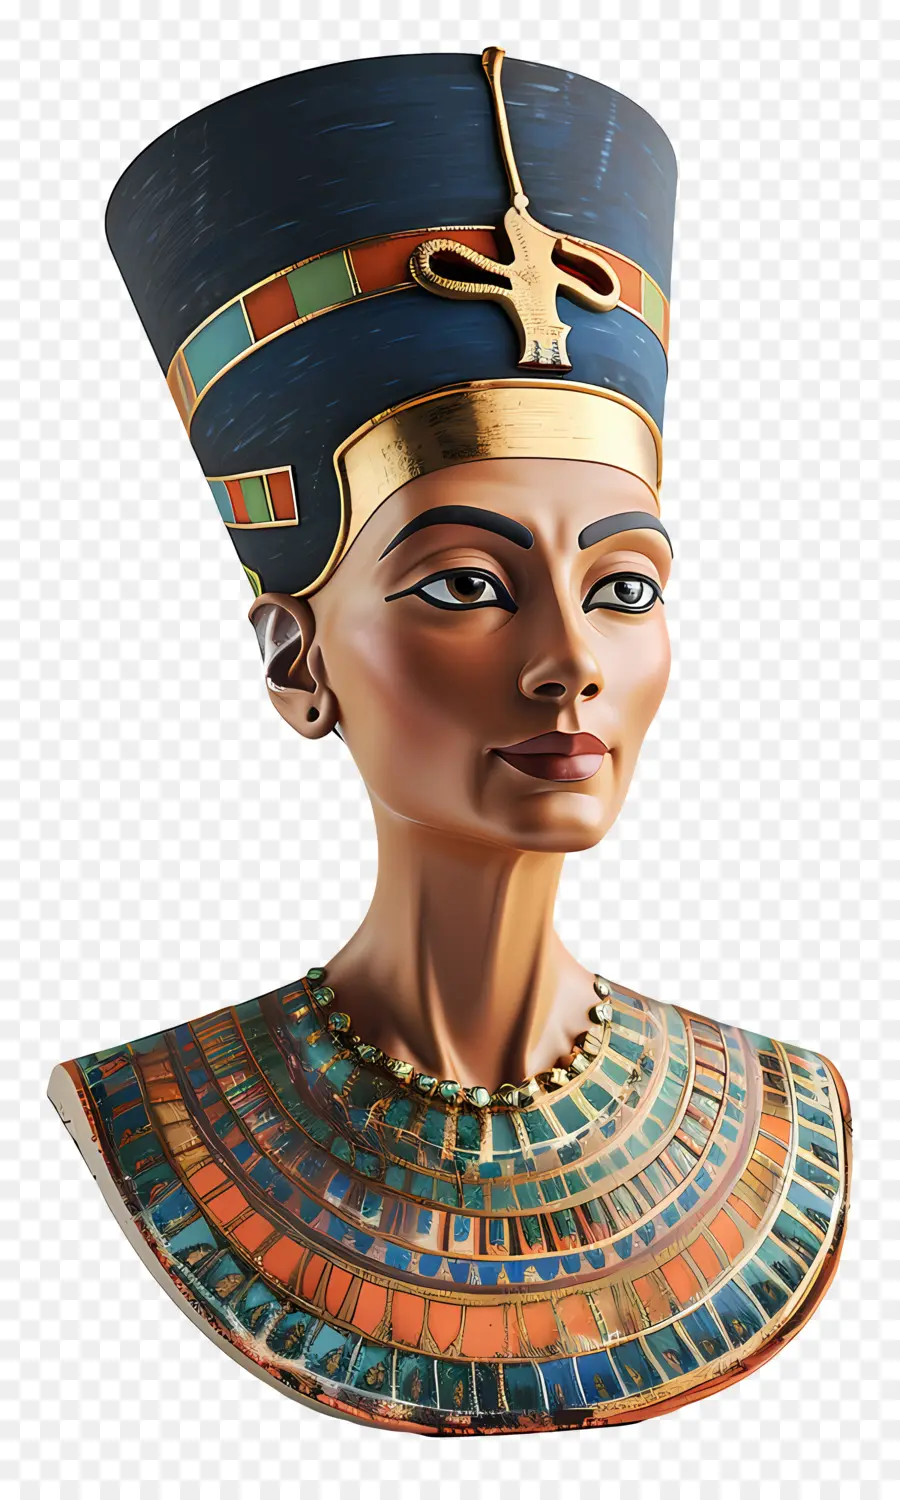 Büste der ägyptischen Frau ägyptische Frau Porträt komplizierter verzierter Stil hohe Wangenknochen mandelförmige Augen - Komplizierter, verzierter ägyptischer Frau Porträt im Oval